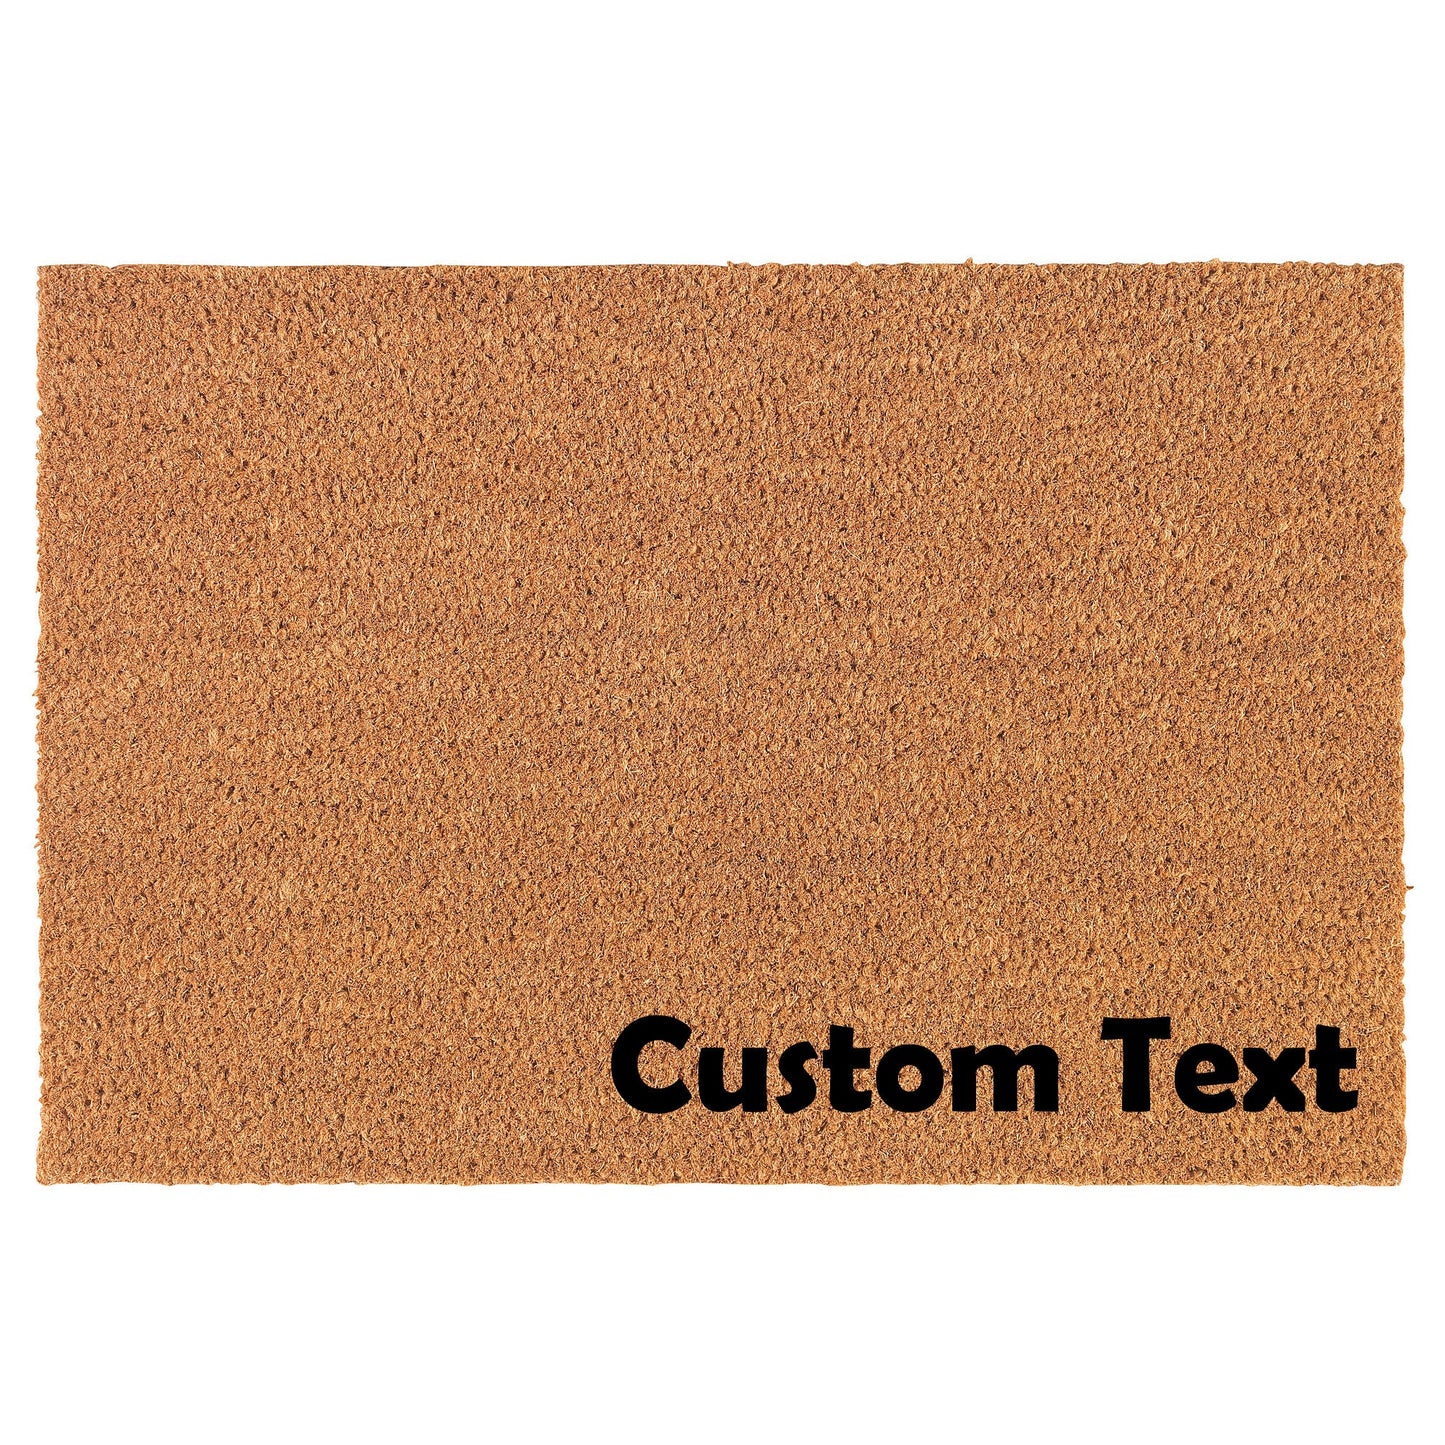 Custom Text Corner Personalized Coir Doormat Welcome Front Door Mat New Home Closing Housewarming Gift